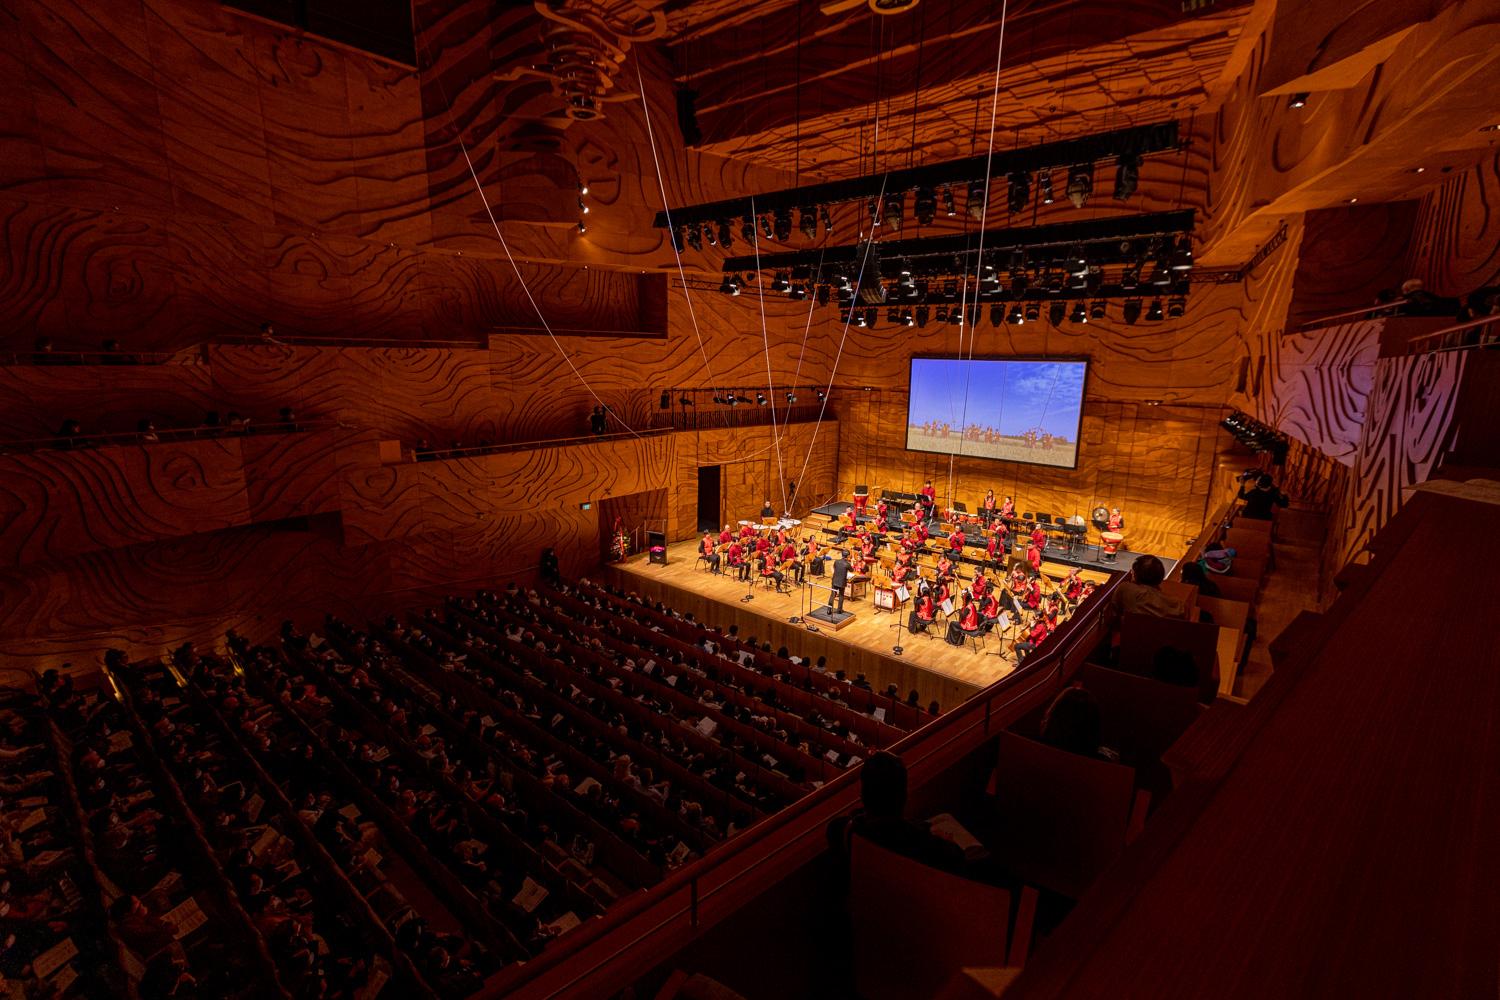 香港驻悉尼经济贸易办事处昨日（九月四日）在澳洲墨尔本举行《肇乐风韵耀双庆》中乐音乐会，庆祝香港特别行政区成立25周年，并推广传统中乐。音乐会获超过900名观众热烈欢迎。